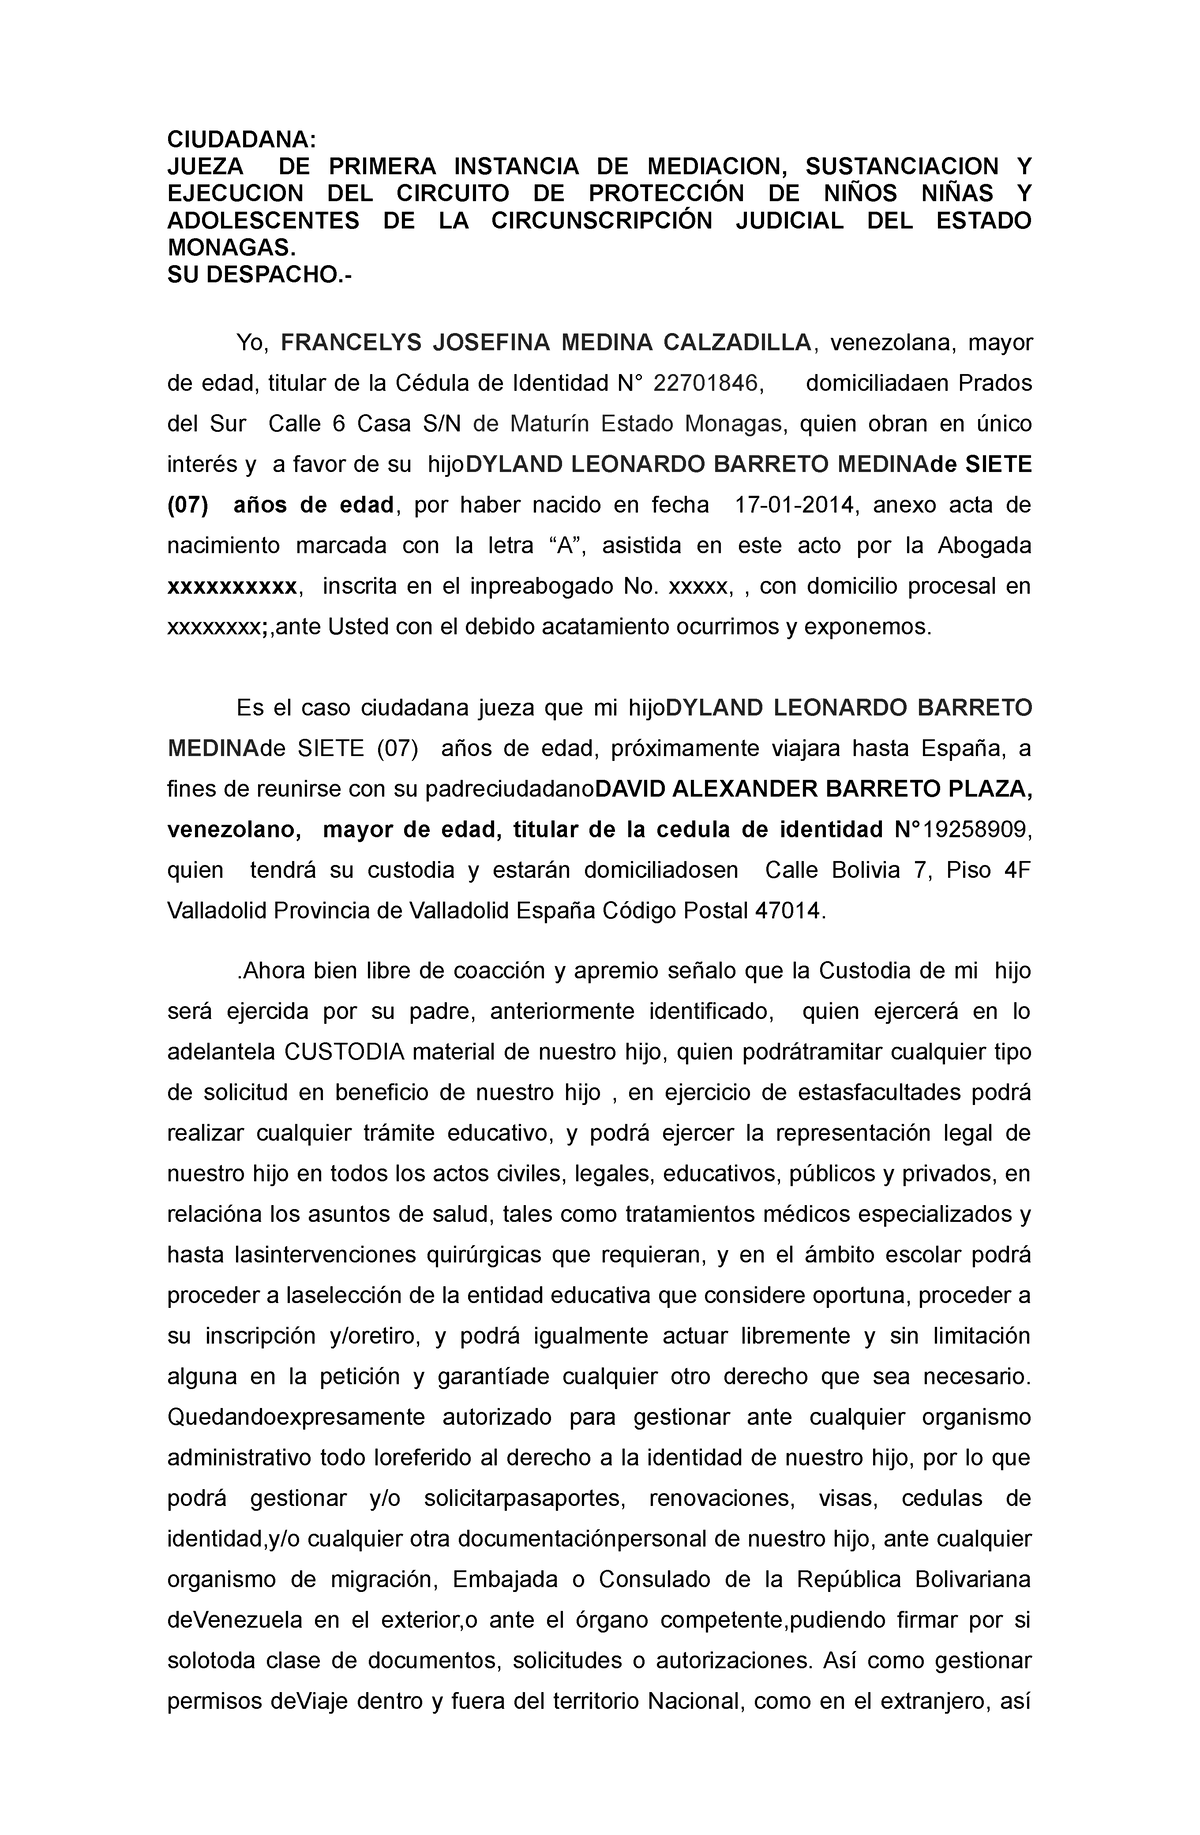 Autorizacion Judicial de Representacion en el Extrajero - CIUDADANA ...